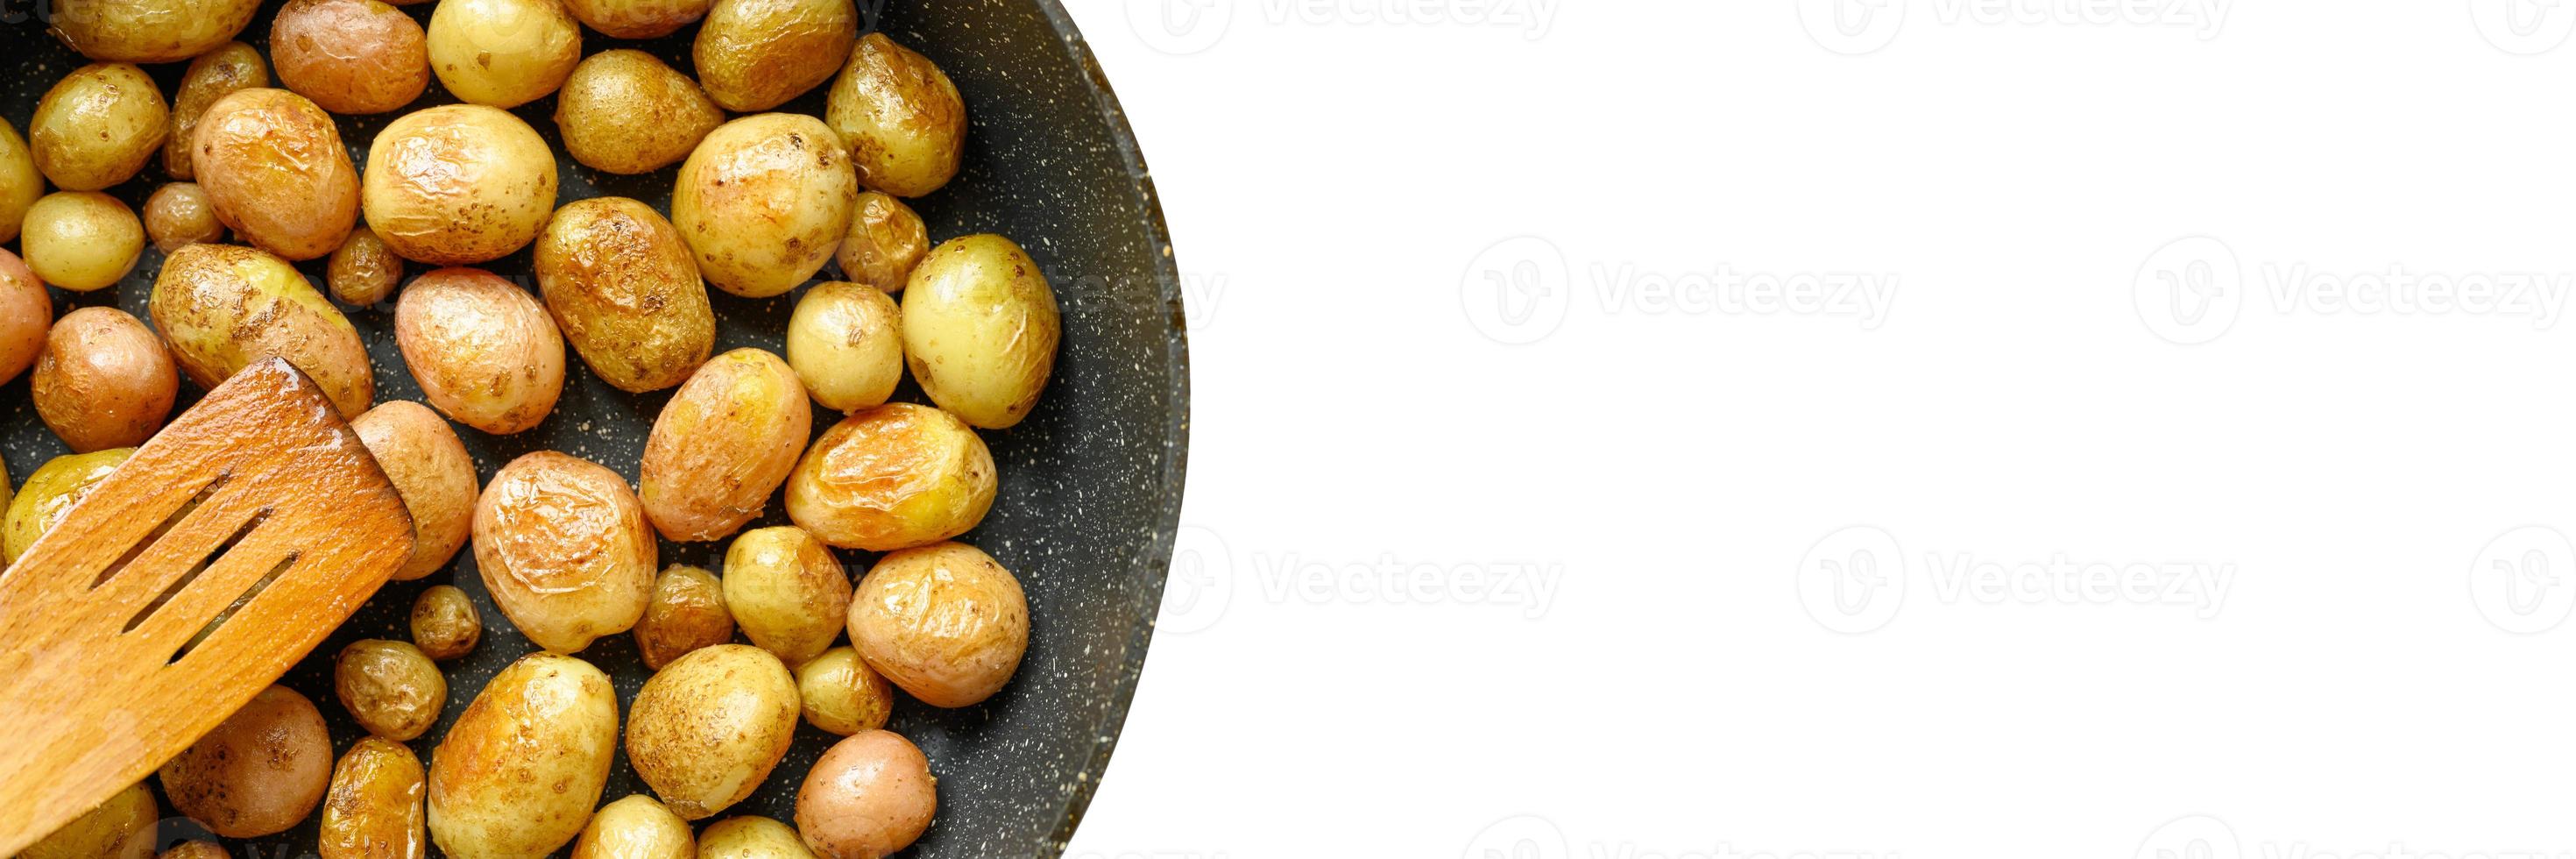 gouden geroosterde aardappelen in de schil foto